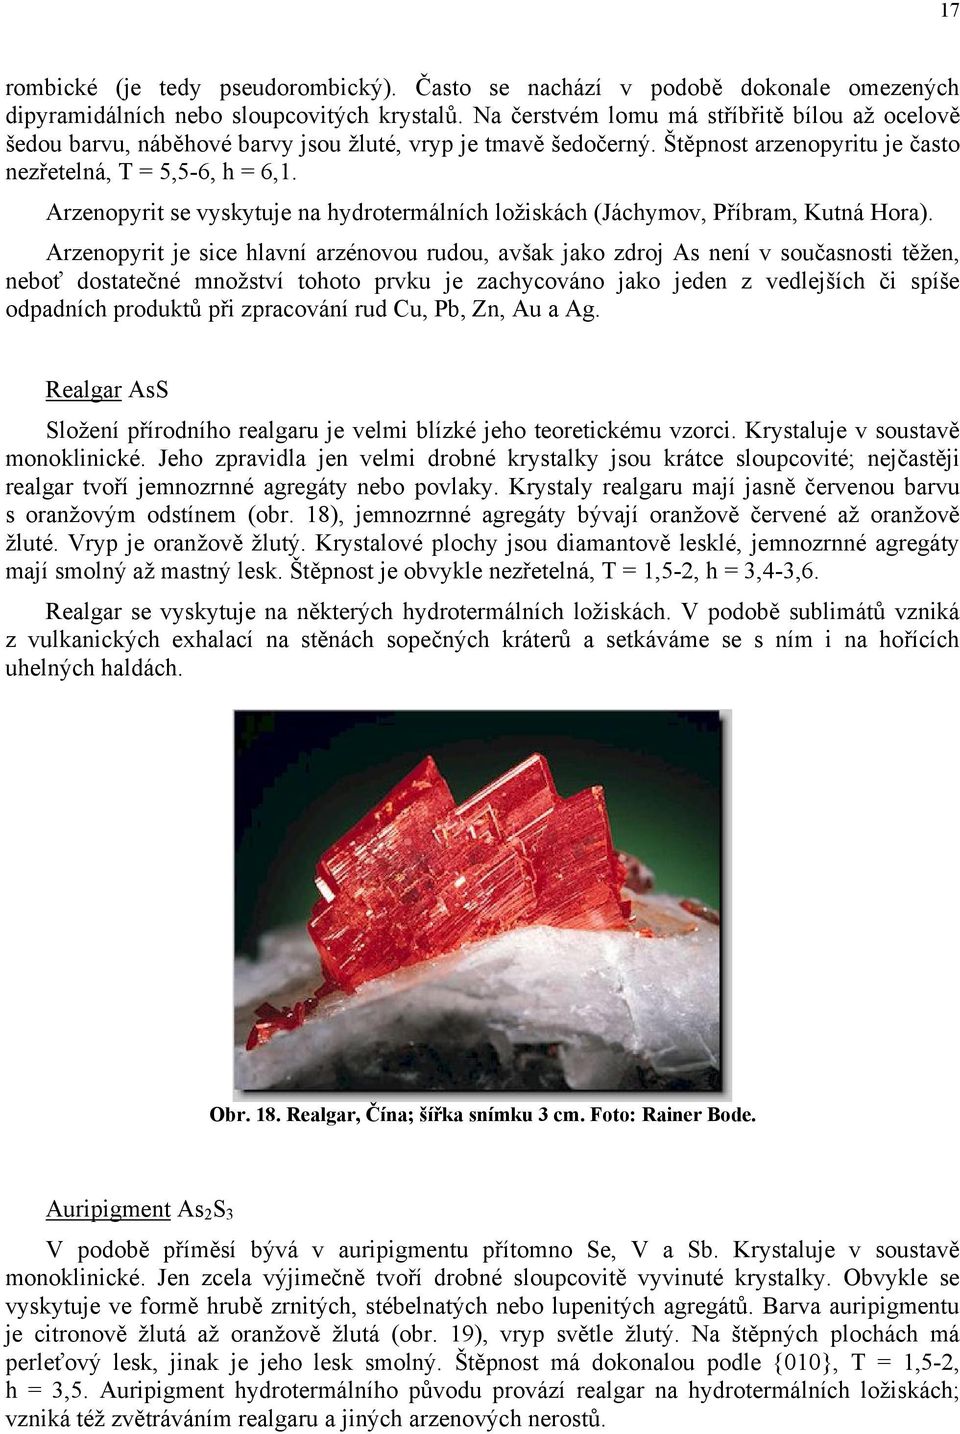 Arzenopyrit se vyskytuje na hydrotermálních ložiskách (Jáchymov, Příbram, Kutná Hora).